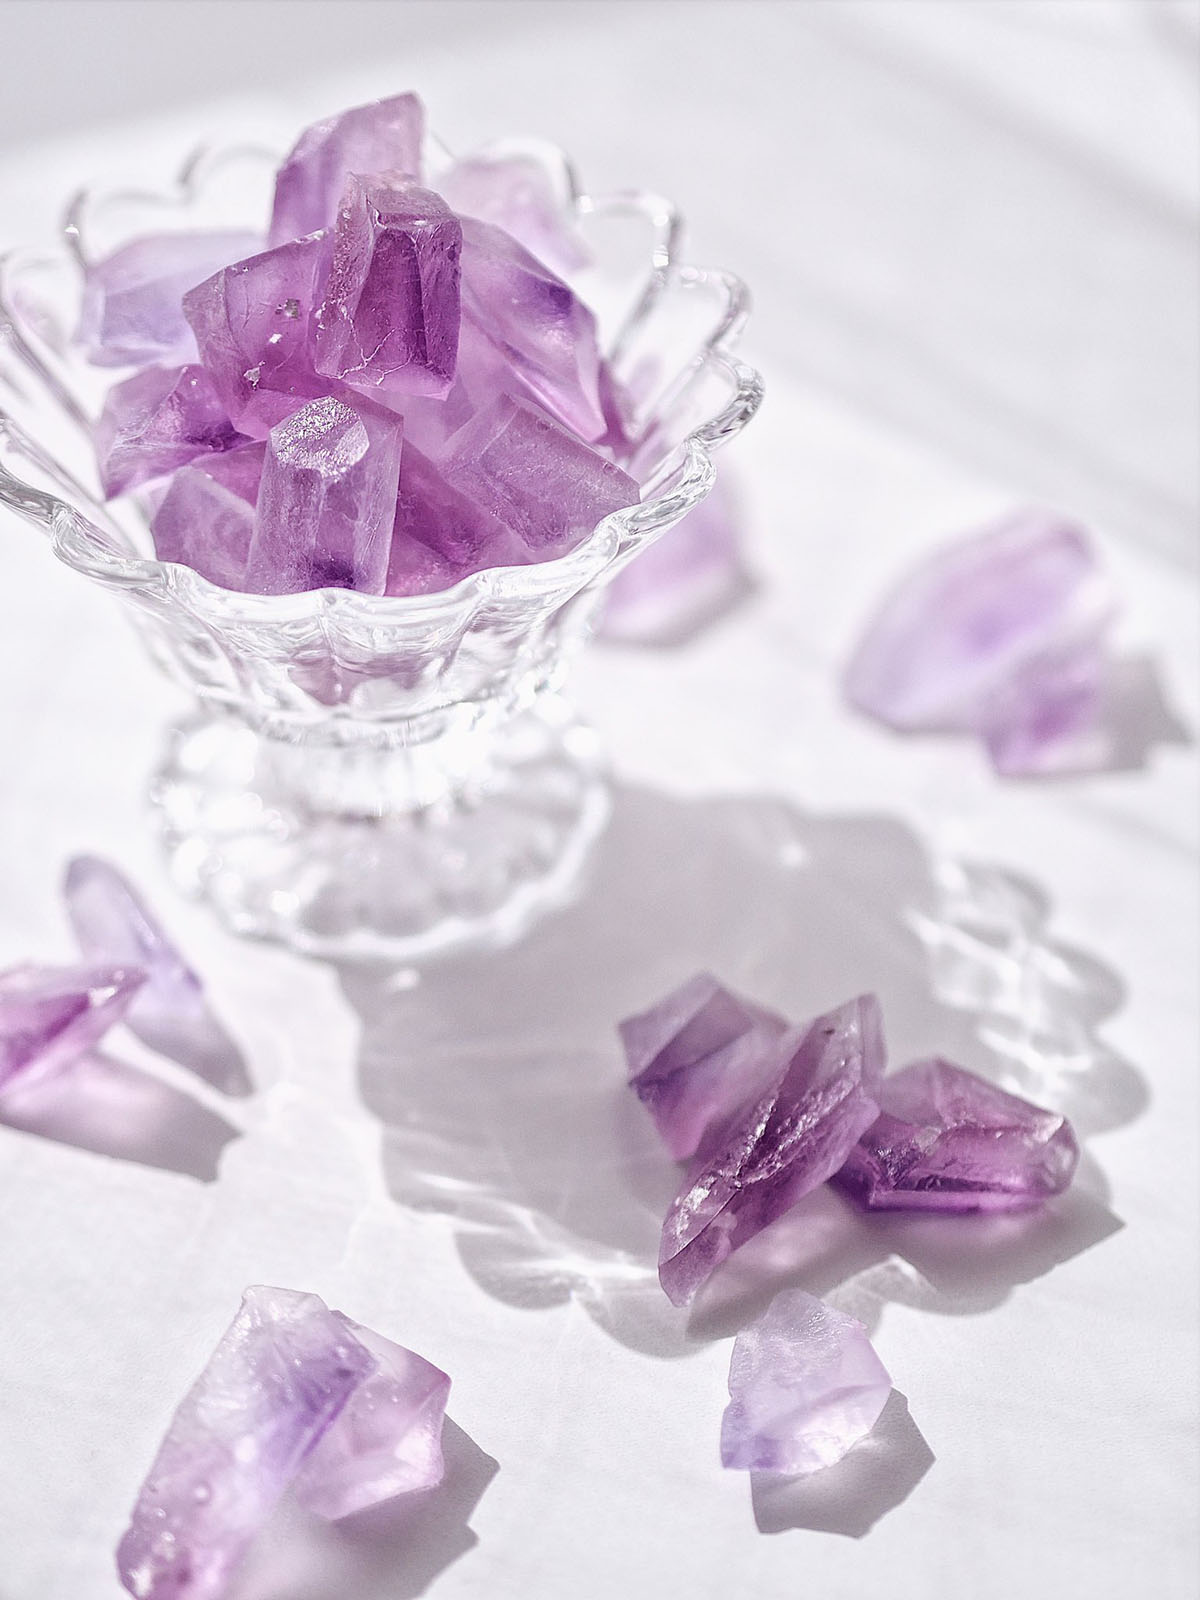 まるで魔法石 食べるとレモン味がする紫水晶みたいなお菓子がとてもキレイ 1 2 ページ ねとらぼ